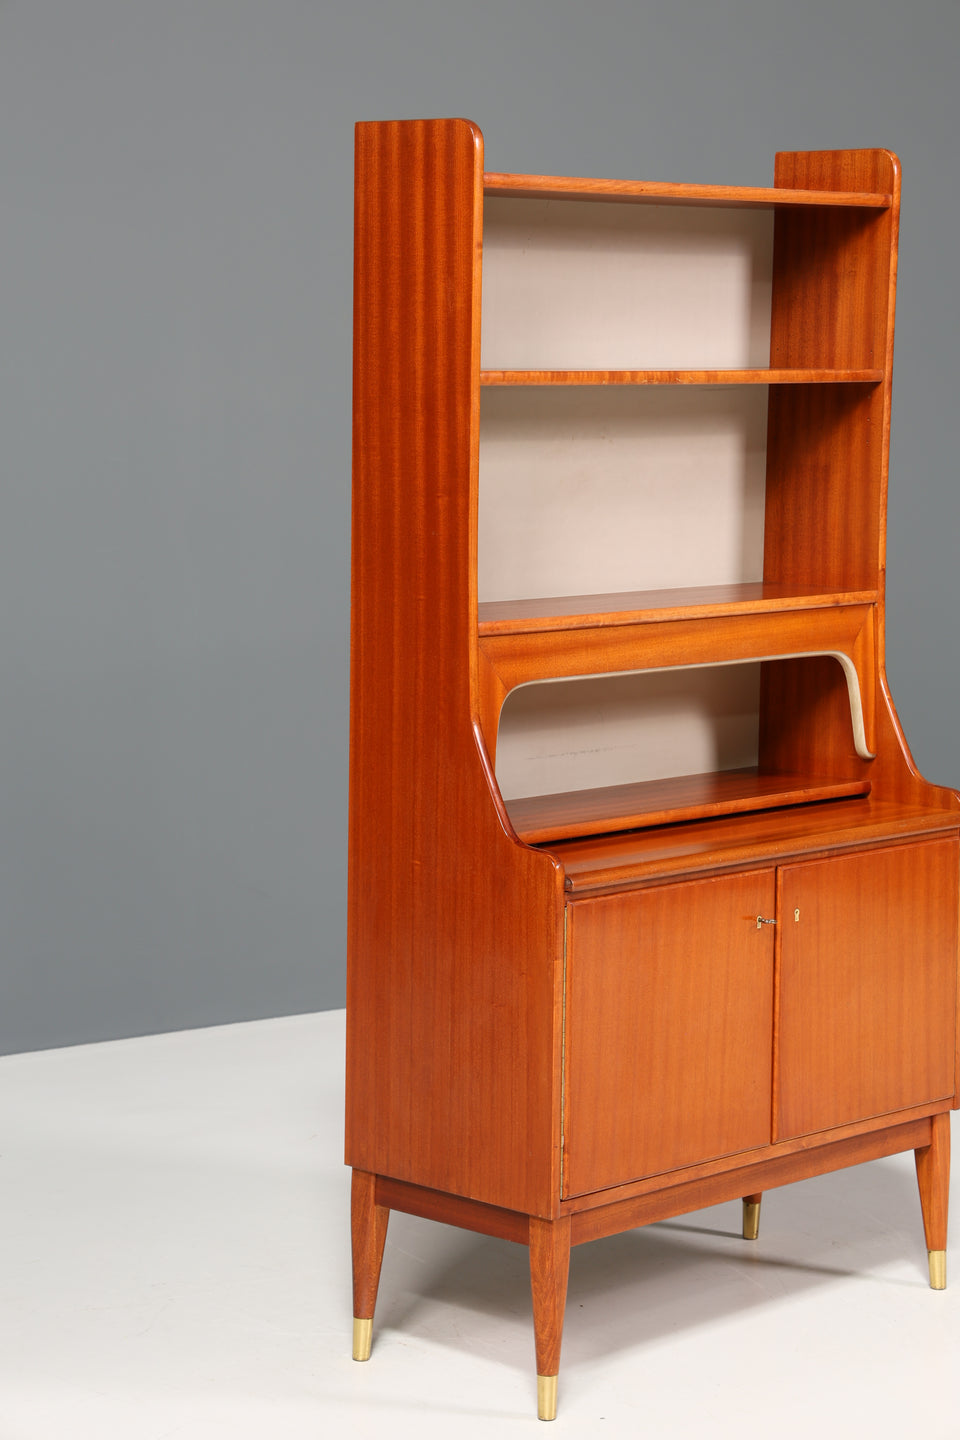 Traumhafter Mid Century Schrank Sekretär Bücherregal Retro Highboard Vintage Holz Regal 70er Jahre